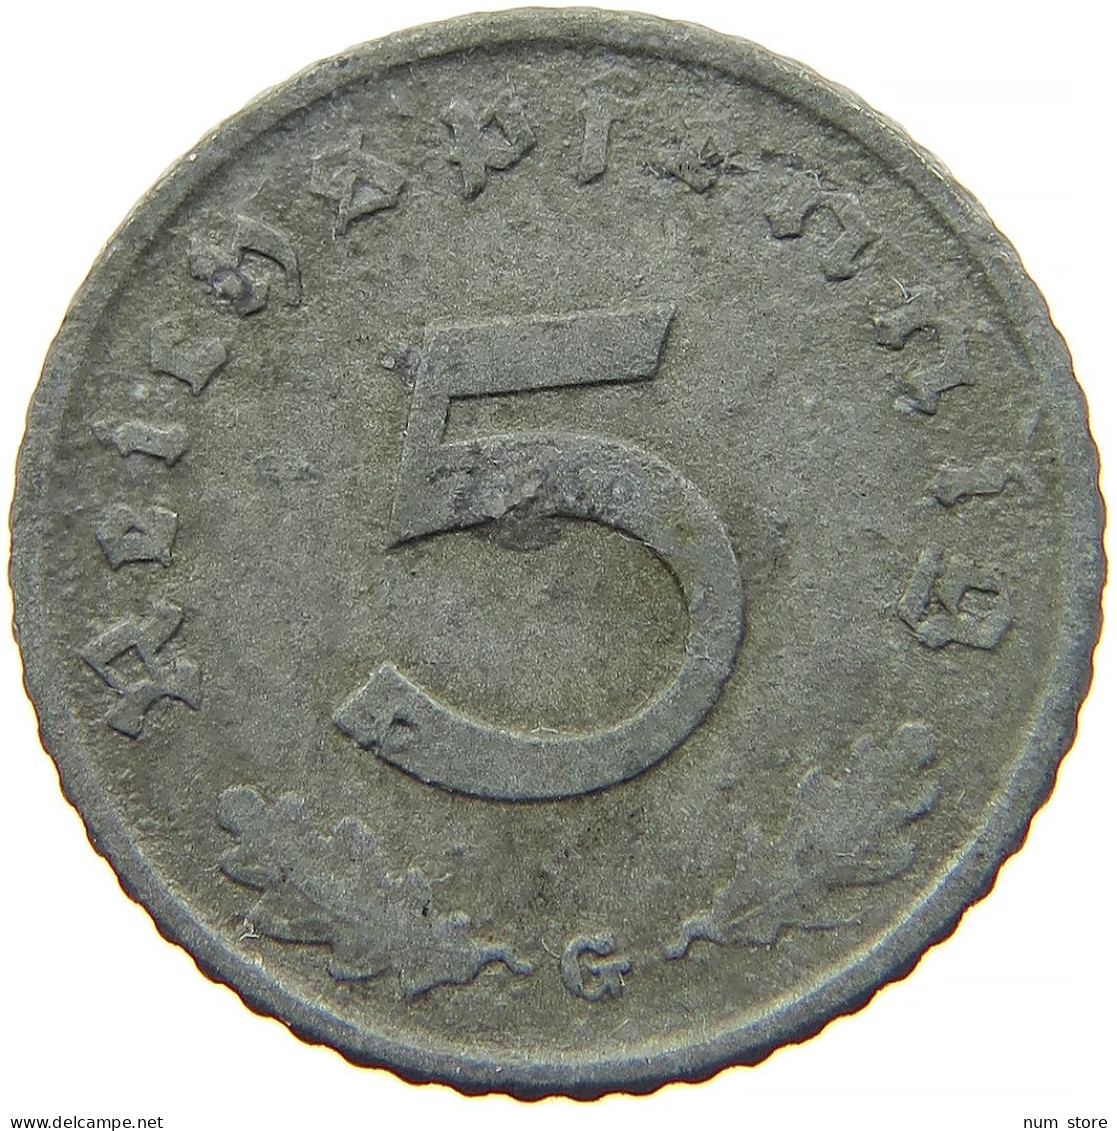 GERMANY 5 REICHSPFENNIG 1943 G #s091 0813 - 5 Reichspfennig